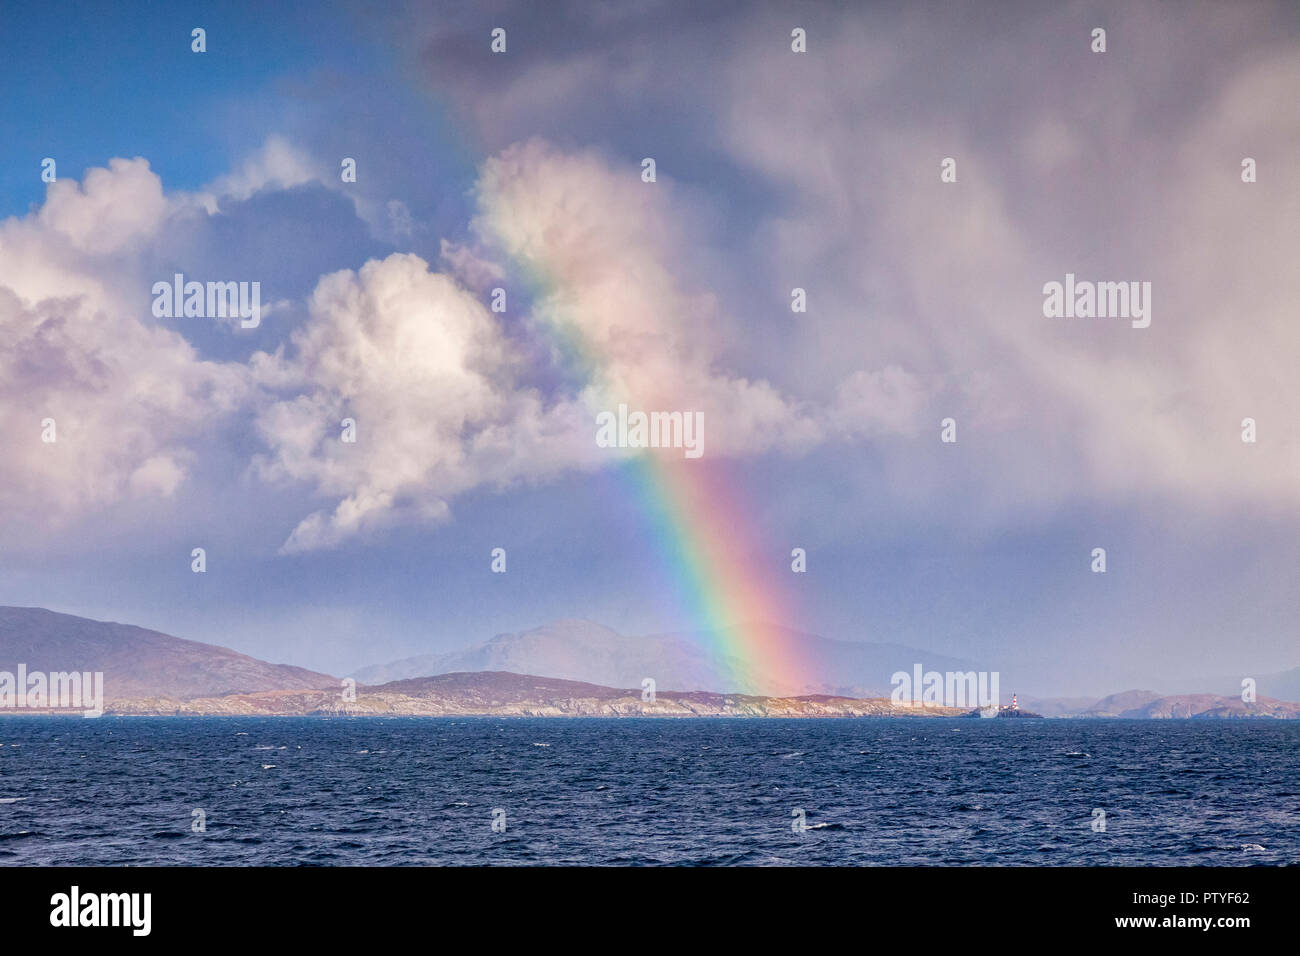 Vue depuis la mer de rainbow et phare Eilean Glas approche du port de Tarbert sur l'île de Harris, îles Hébrides, Ecosse, Royaume-Uni. Banque D'Images